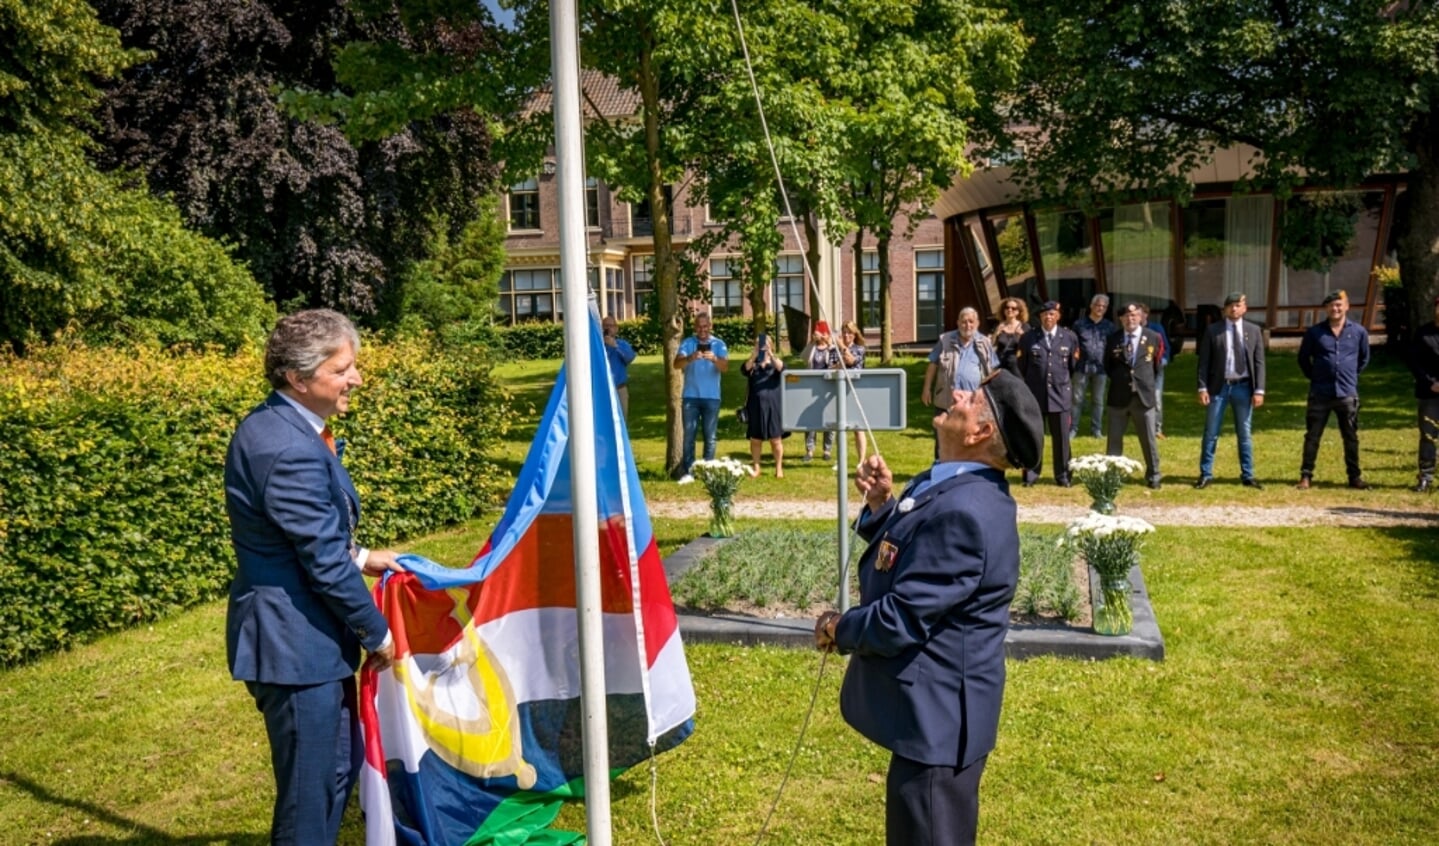 Burgemeester Hans Beenakker en oudste veteraan M. van Gelder onthulde met het hijsen van een nieuwe vlag het witte anjerperk in stadstuin op Nationale Veteranendag 2021 Foto Jan Bouwhuis.